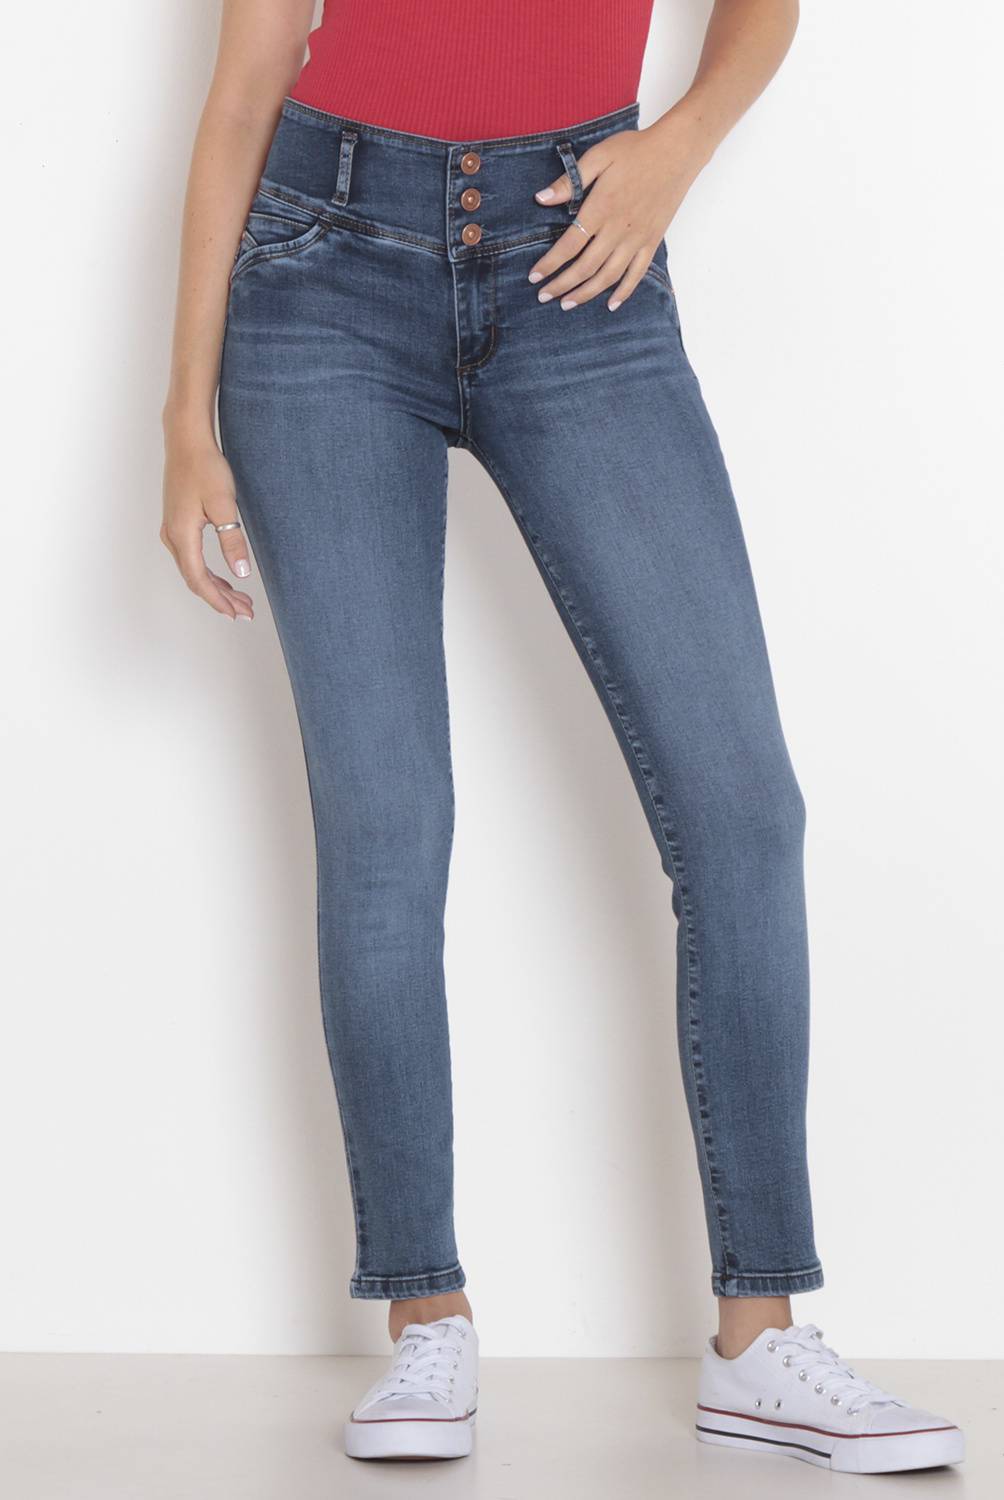 Jeans Skinny Tiro Alto Mujer Wados